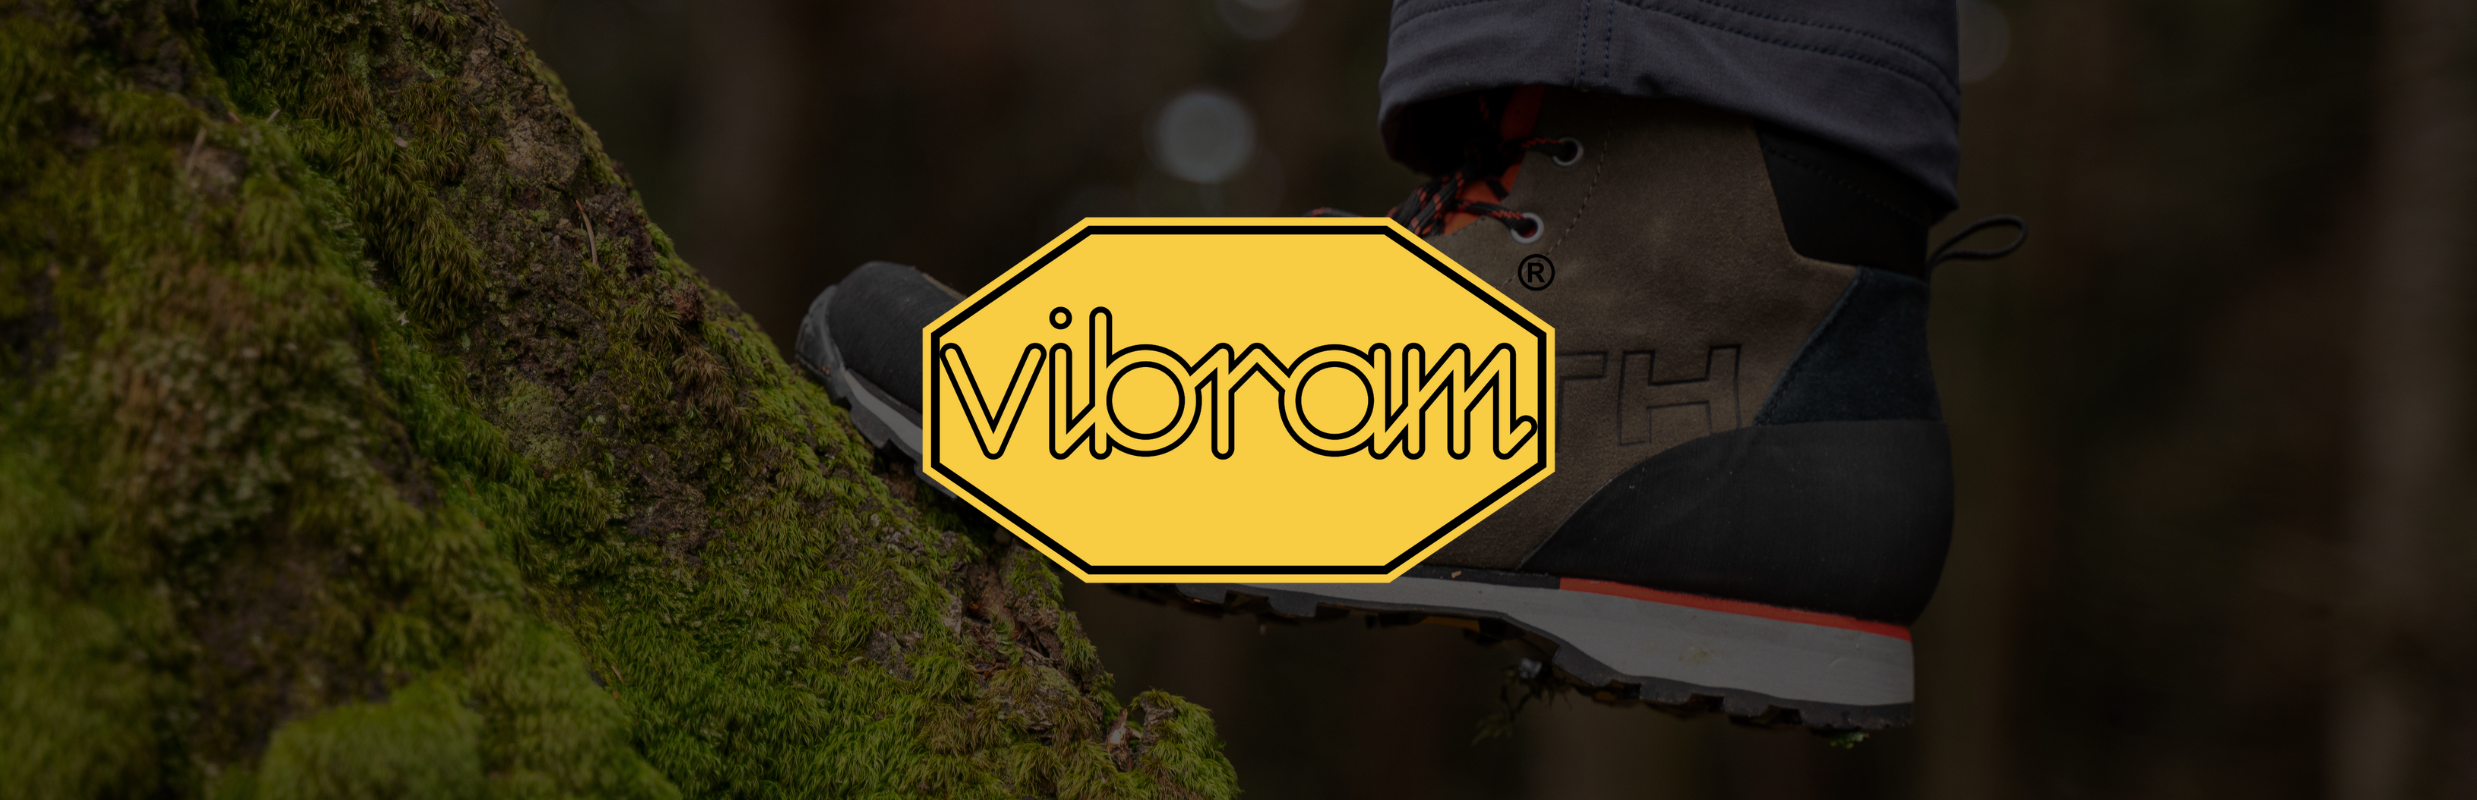 VIBRAM®: Kultovní značka je zárukou pevných kroků v příjemných i náročných podmínkách